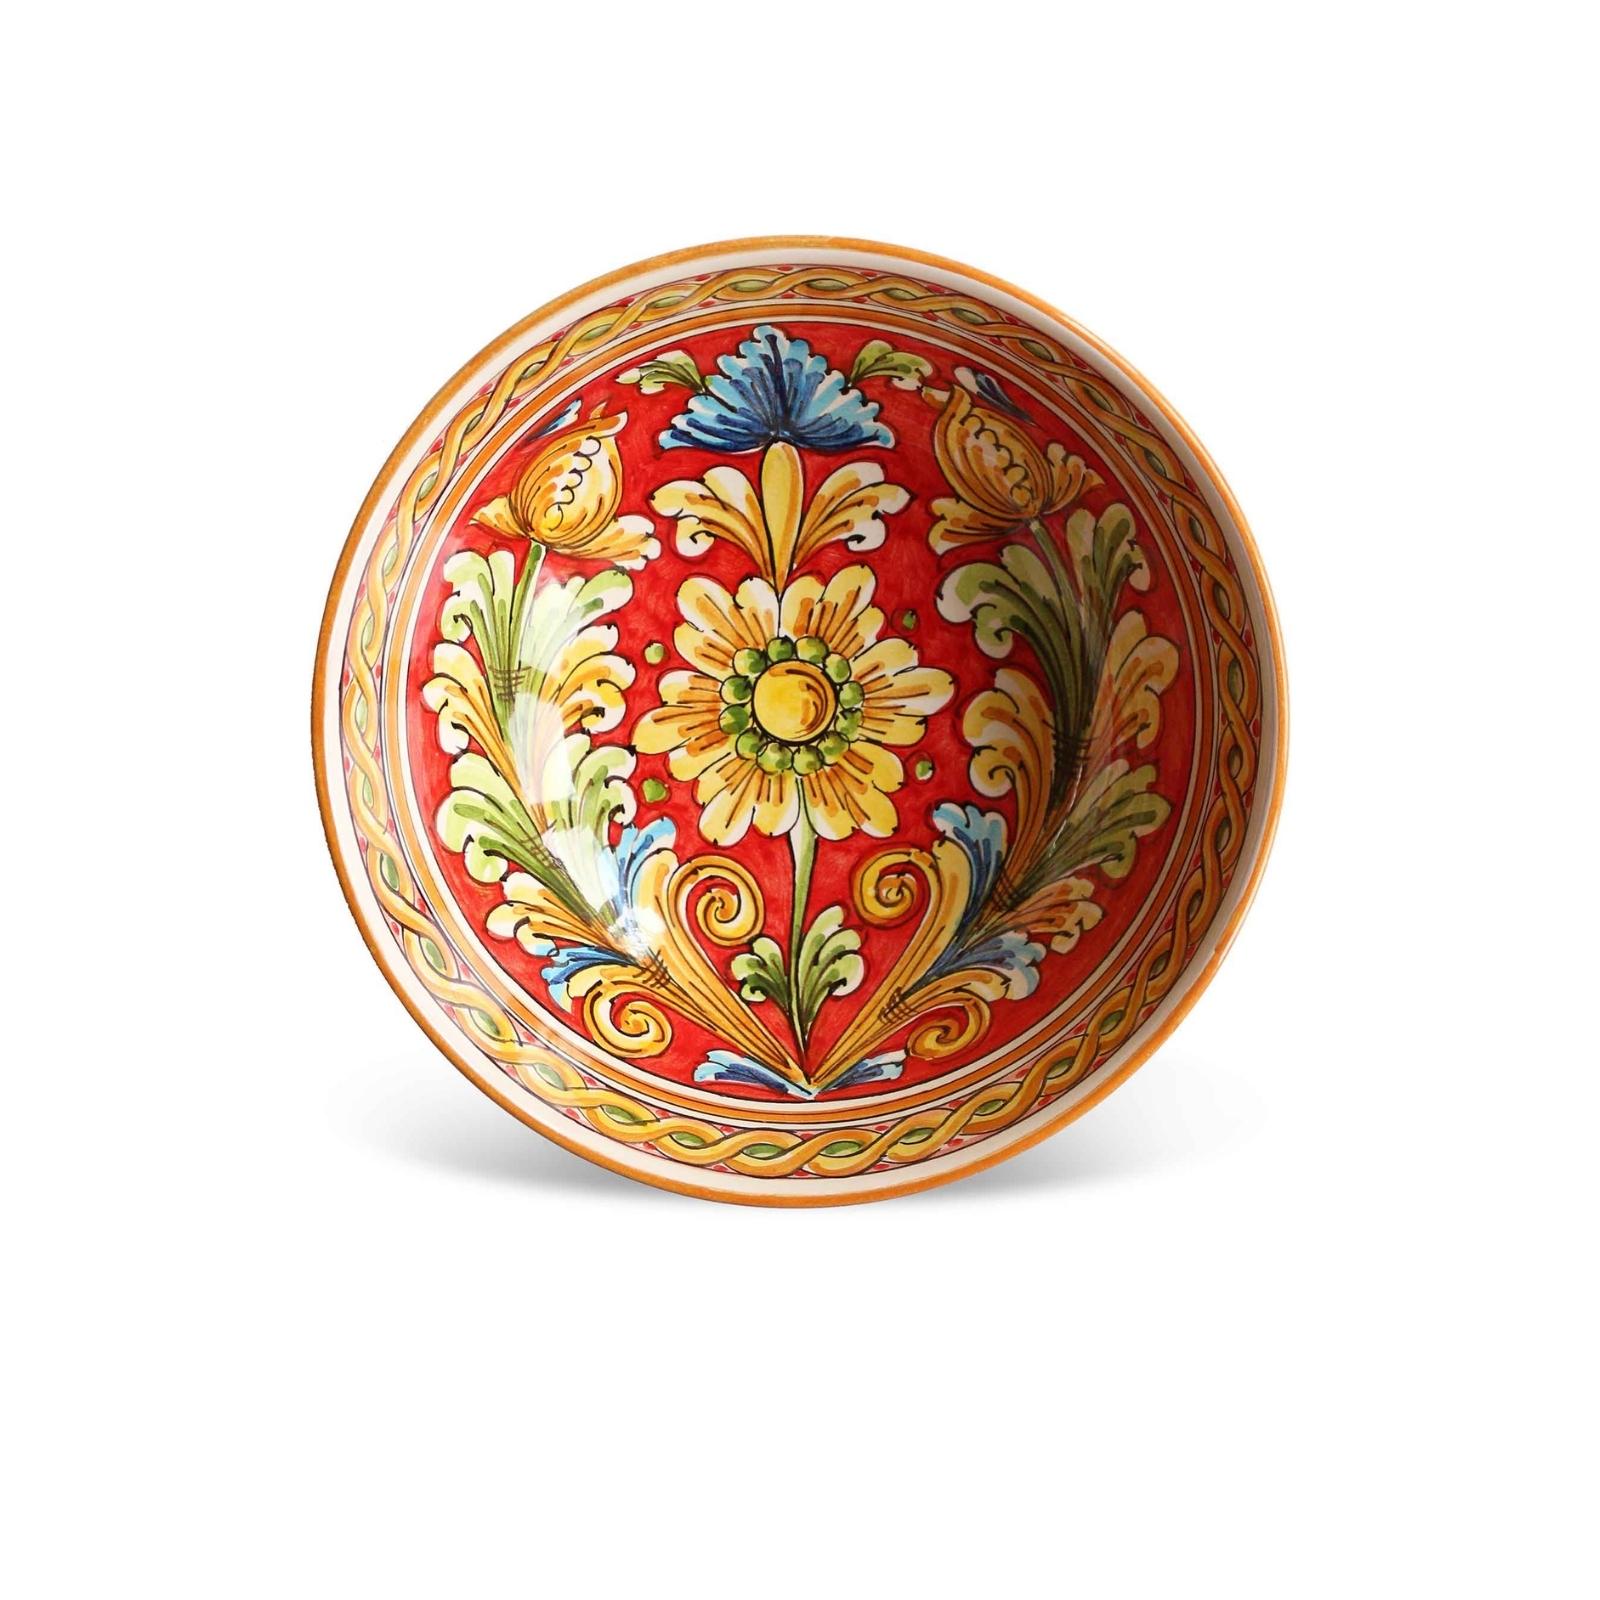 Decorated sicilian ceramic salad bowl 25 cm Marineo